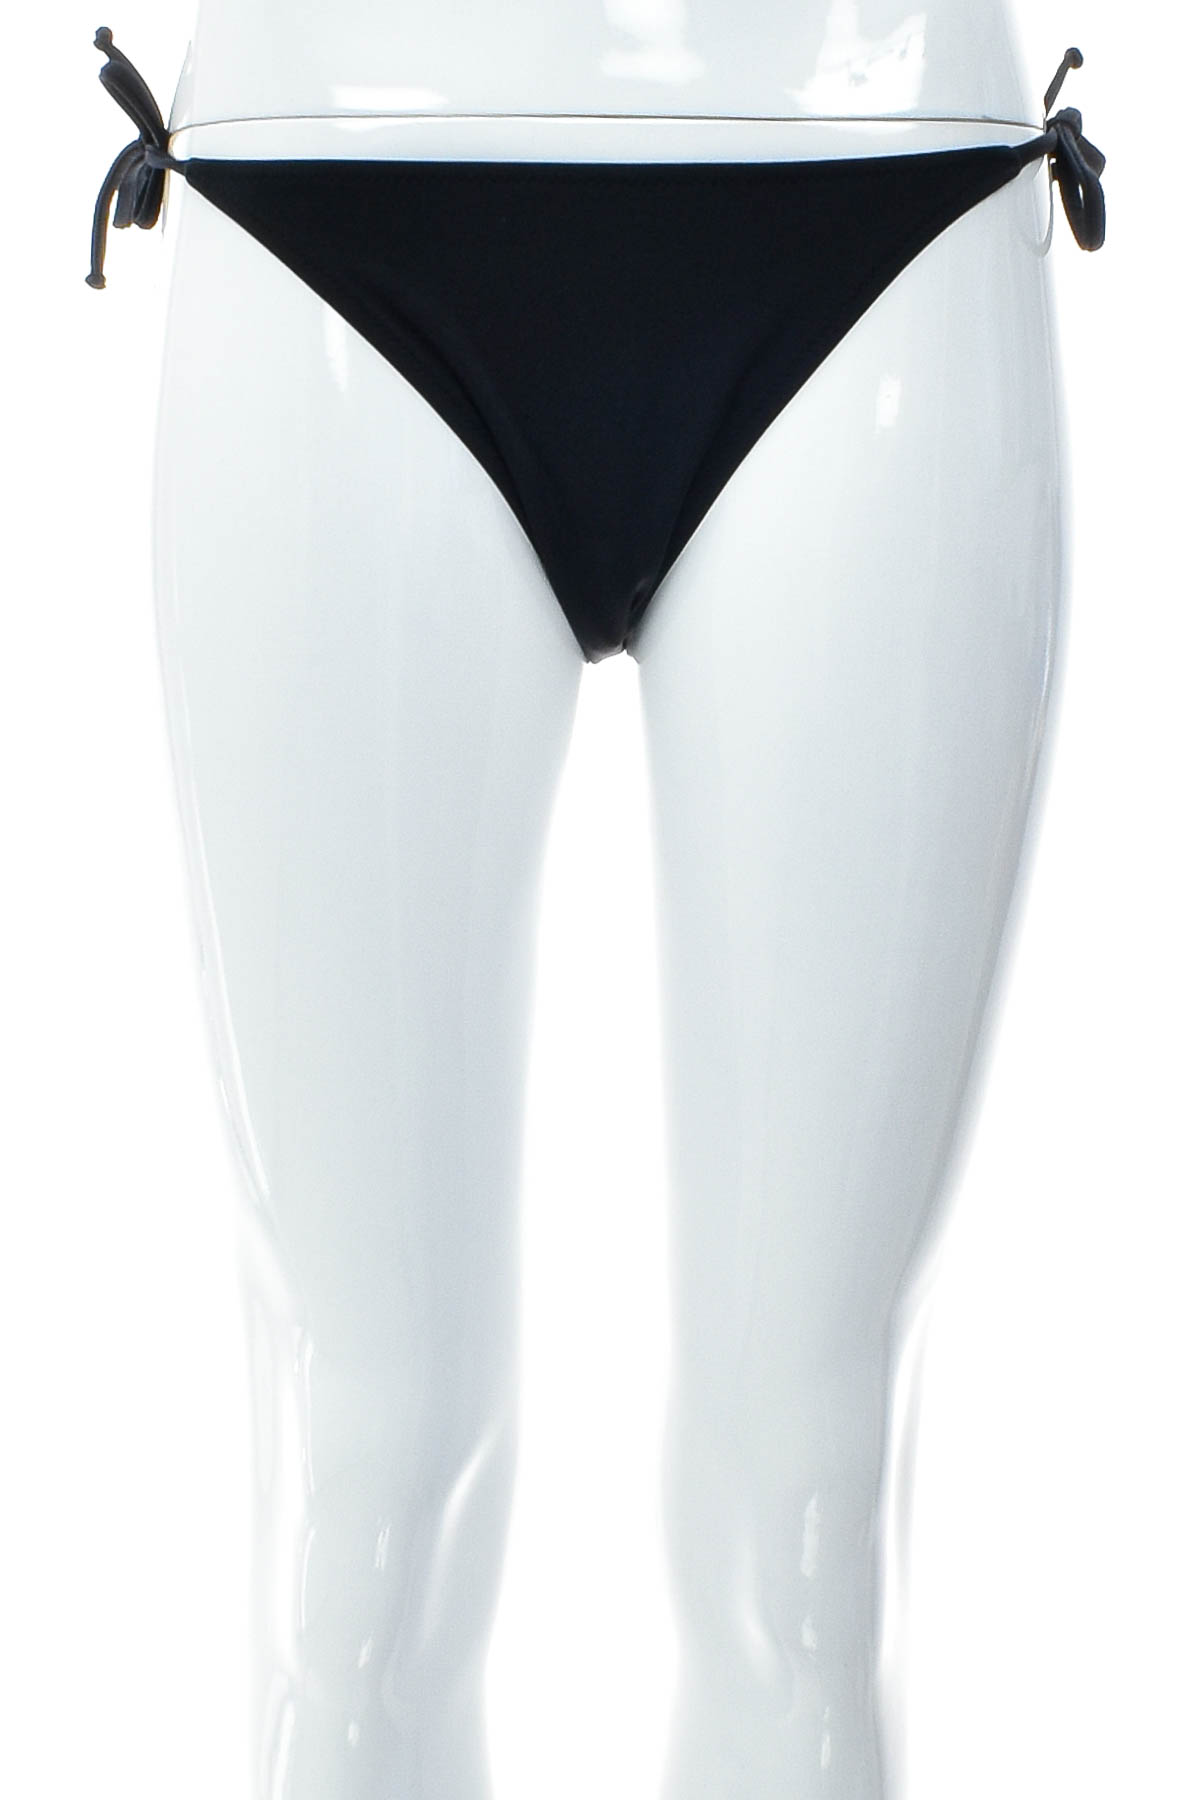 Women's swimsuit bottoms - DIESEL - 0